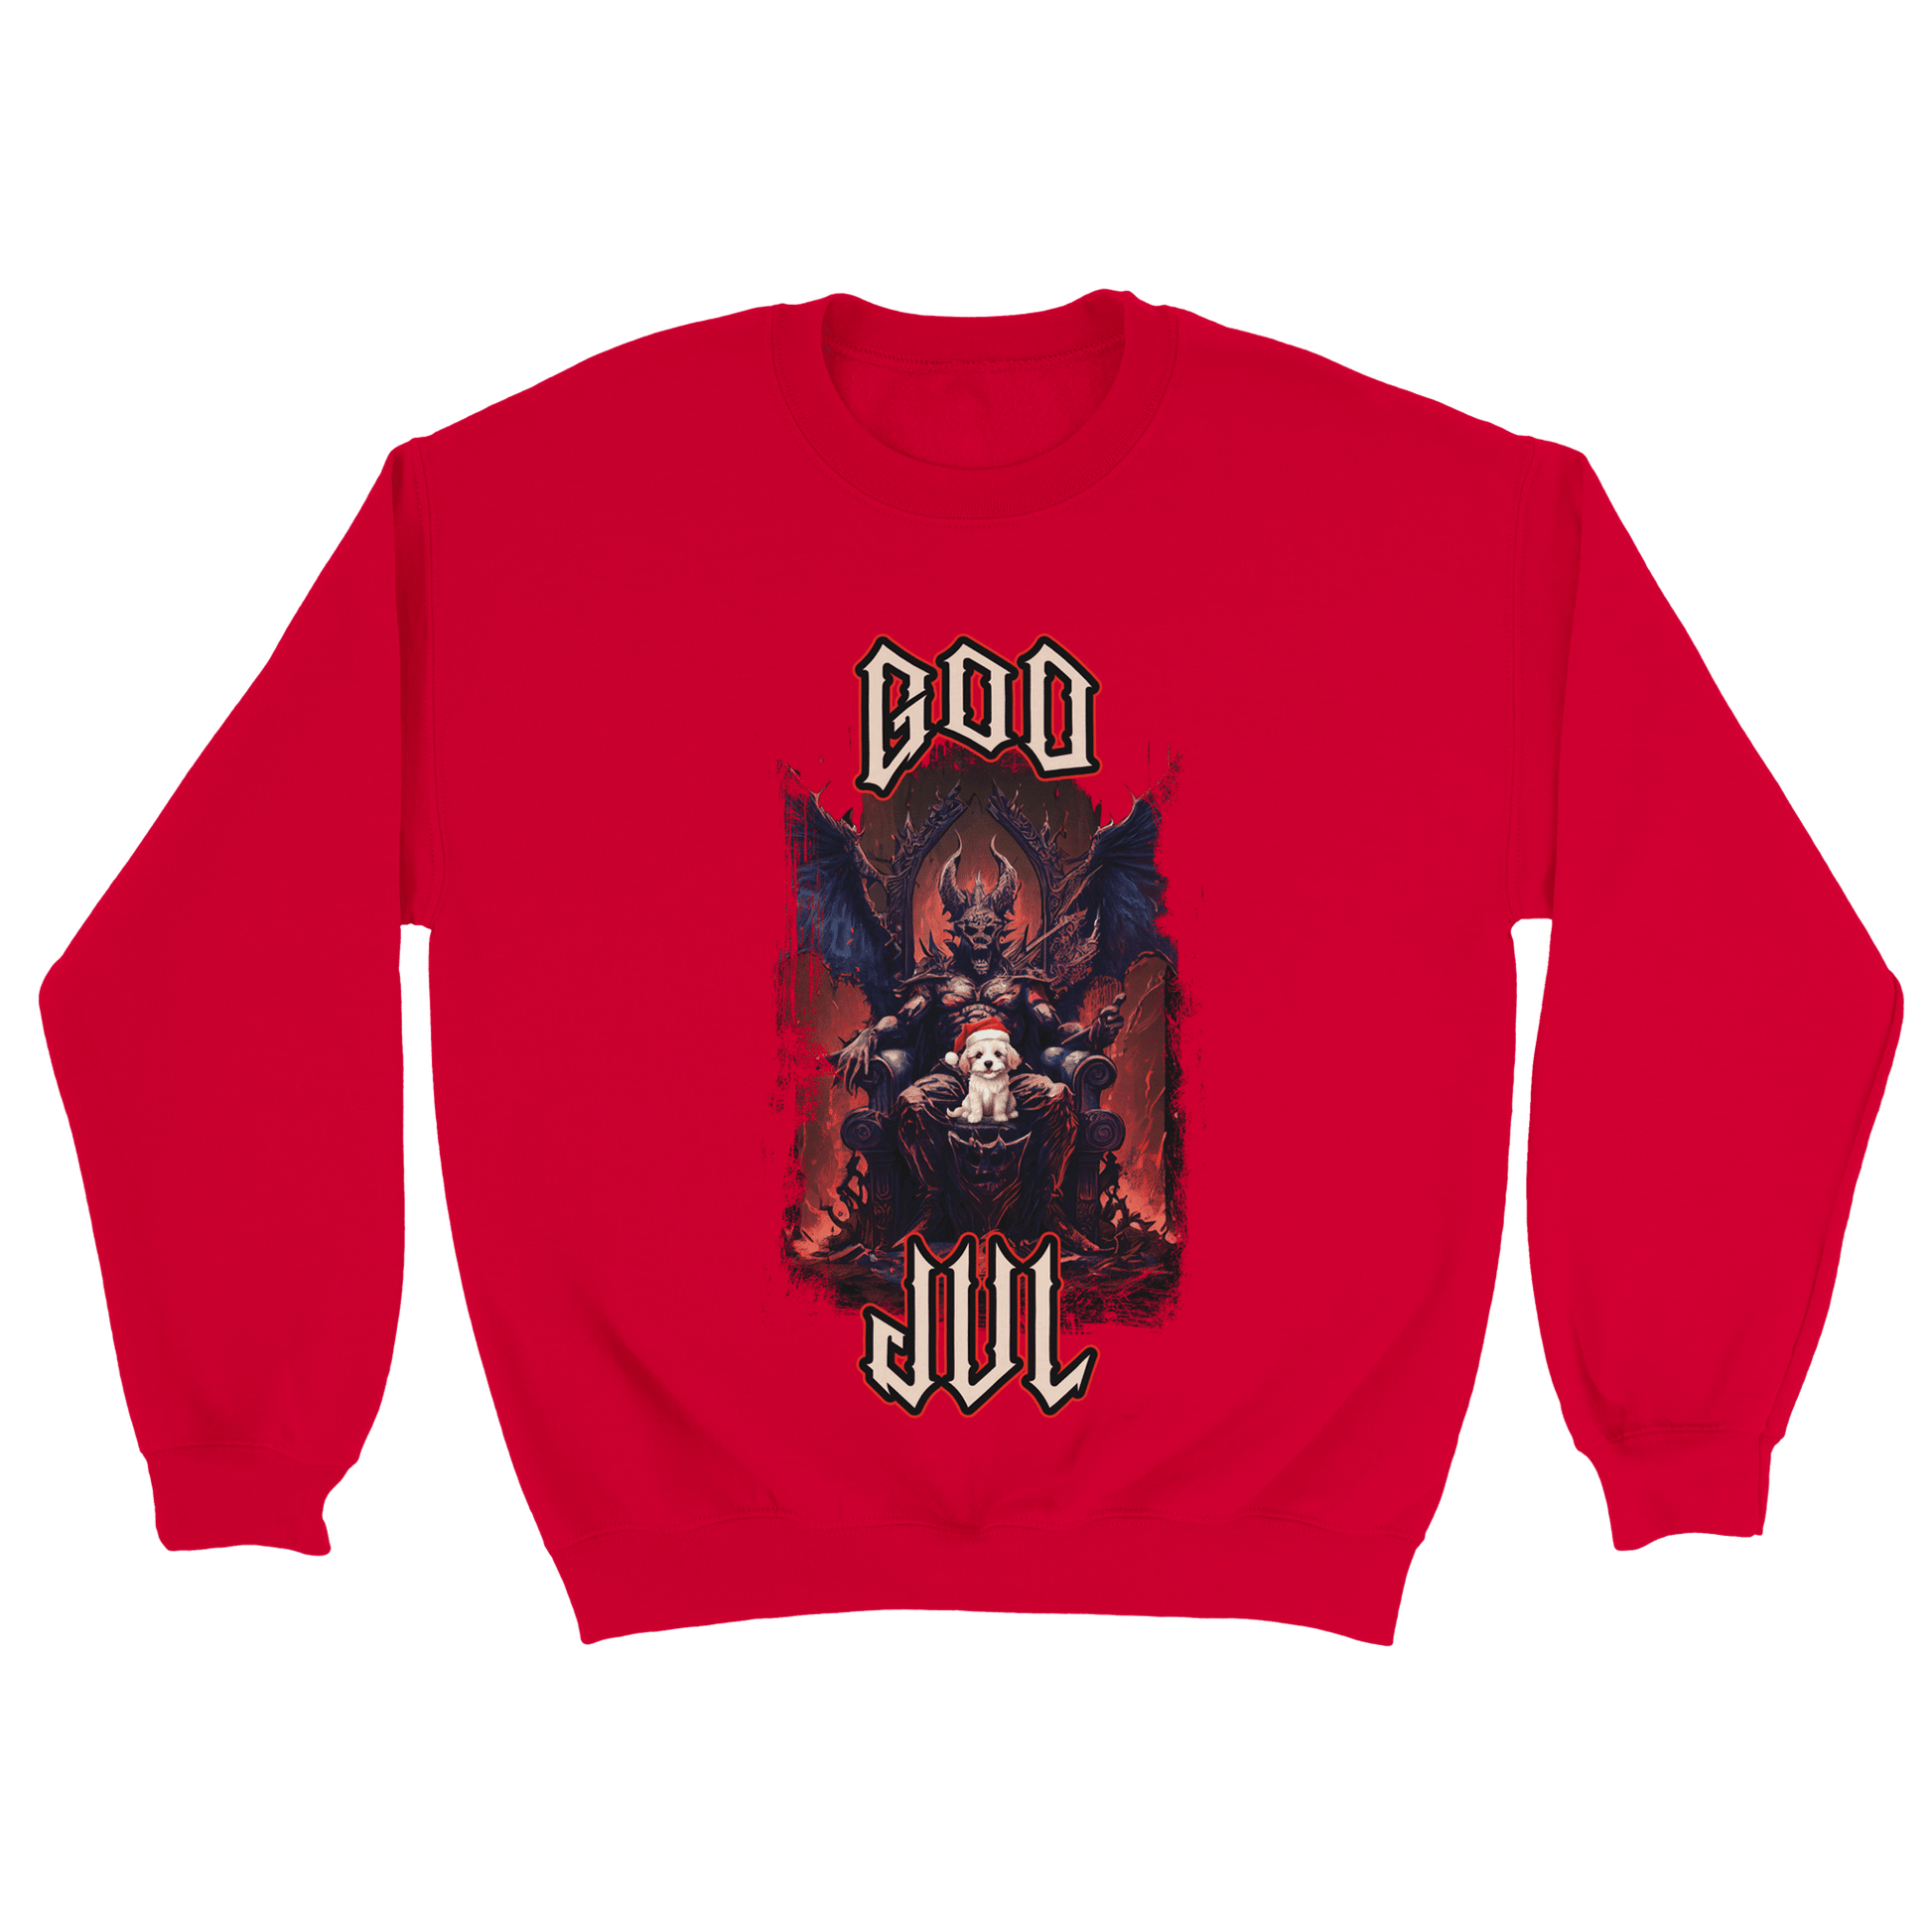 God Jul häftig hundvalp - Sweatshirt Röd